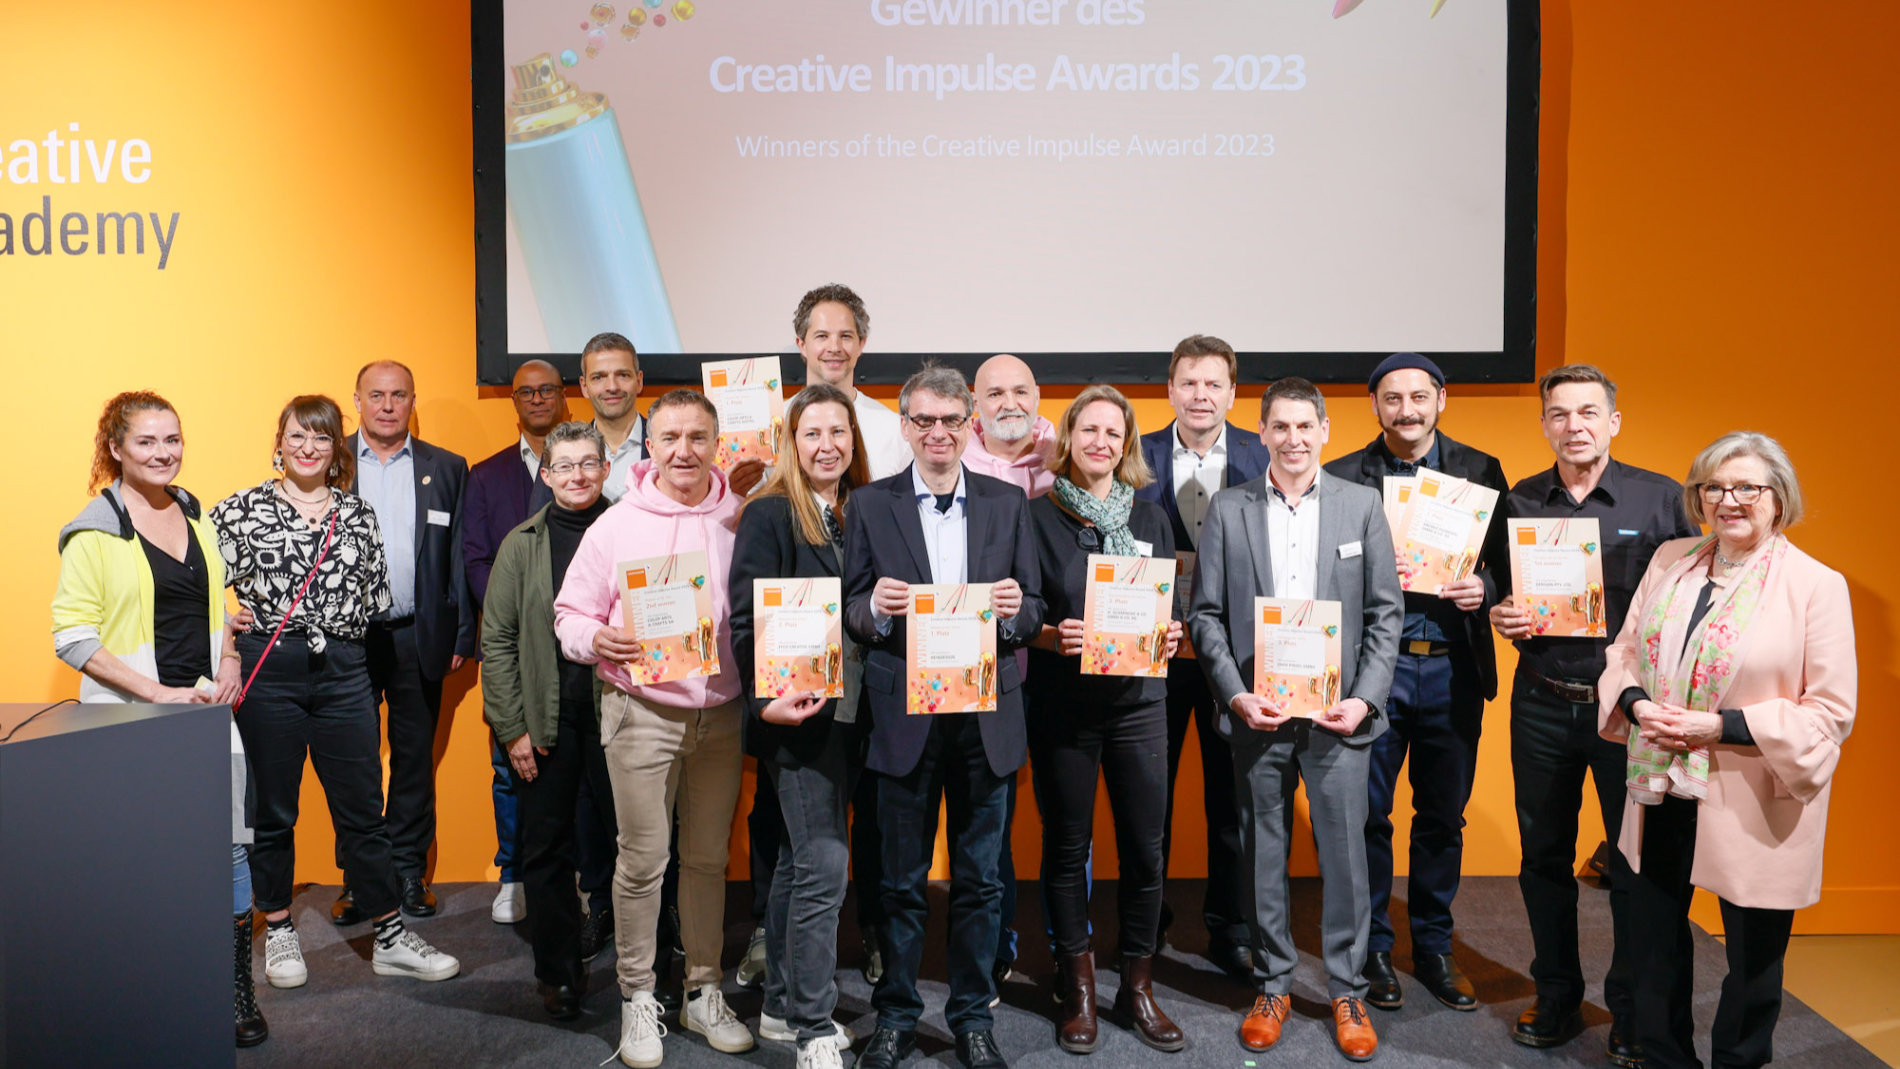 Creative Impulse Award Gewinner 2023